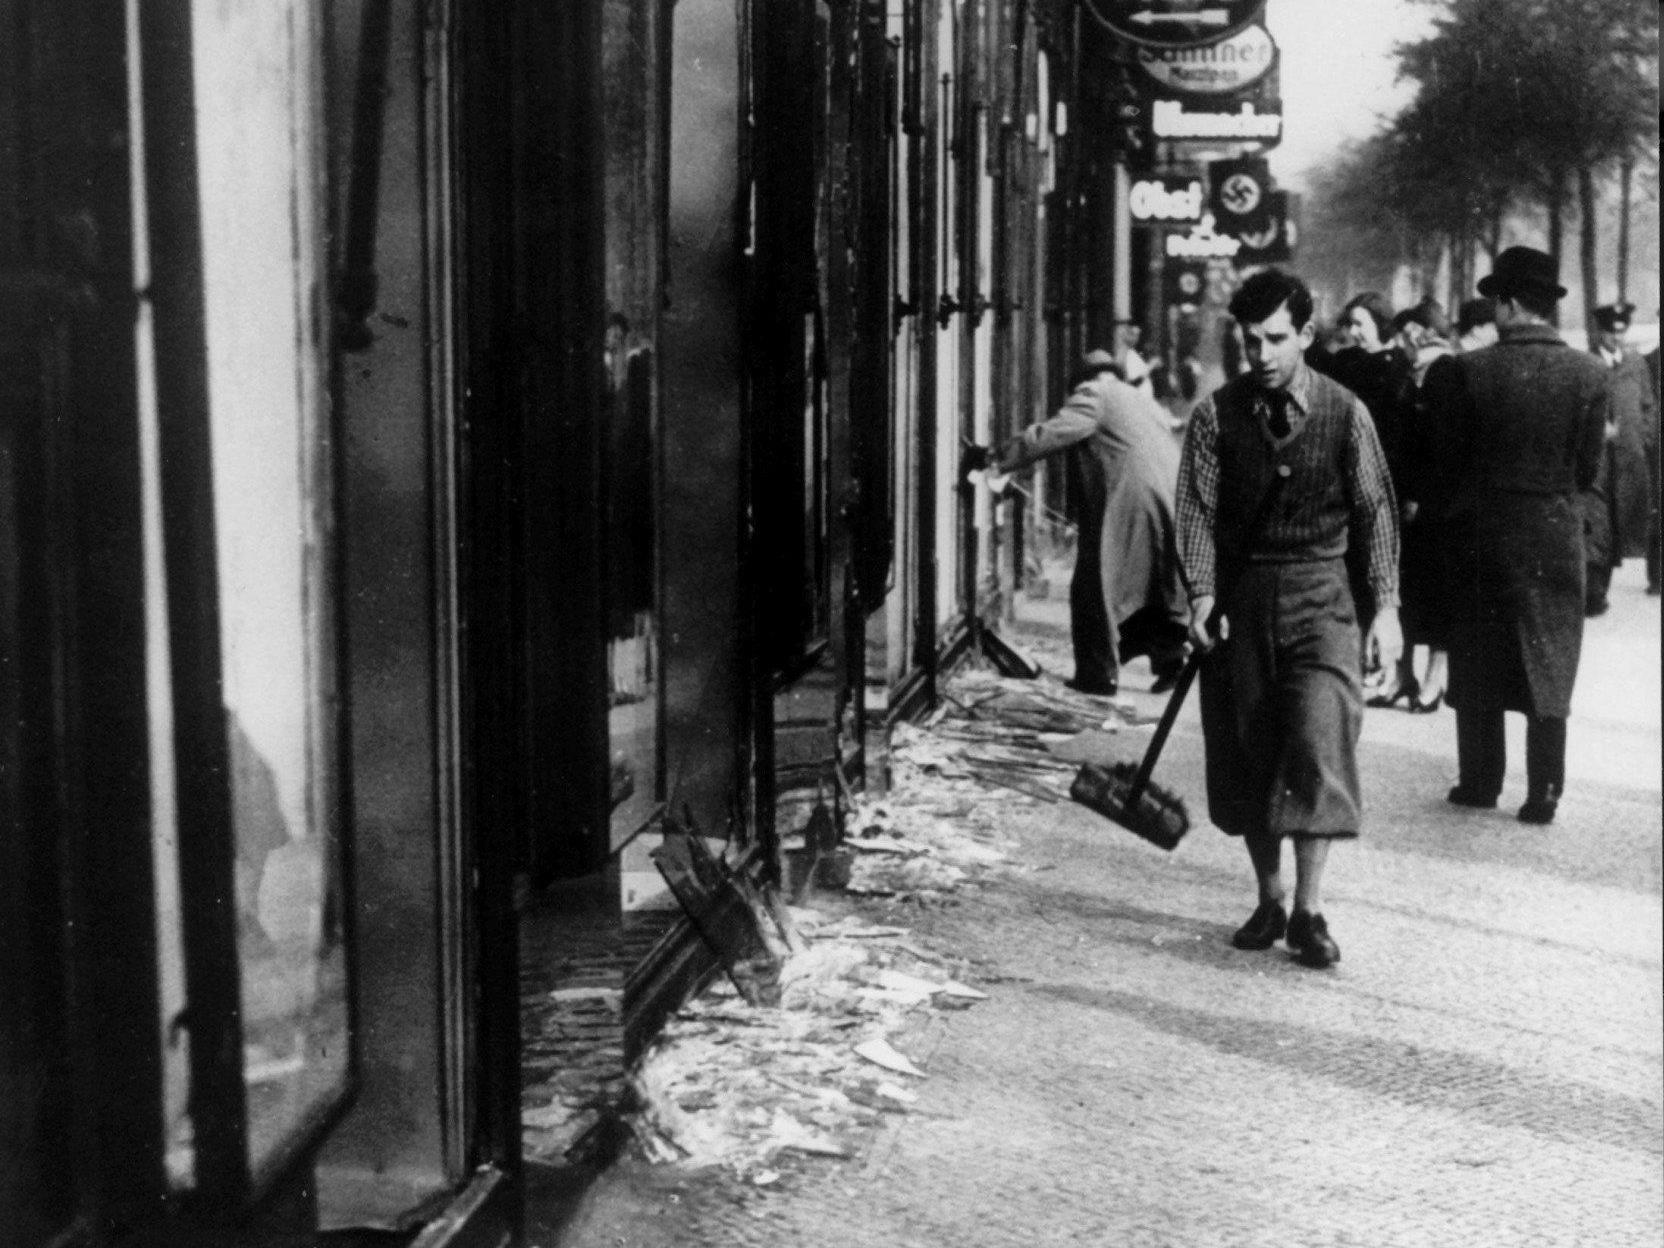 Das Archivbild vom 10.11.1938 zeigt eine jüdische Ladenfront nach der Zerstörung durch Nazis. Zersplitterte Schaufenster und Scherben auf der Straße trugen dem Progrom die verharmlosende Bezeichnung "Reichskristallnacht" ein, deren Herkunft bis heute nicht definitiv geklärt ist.